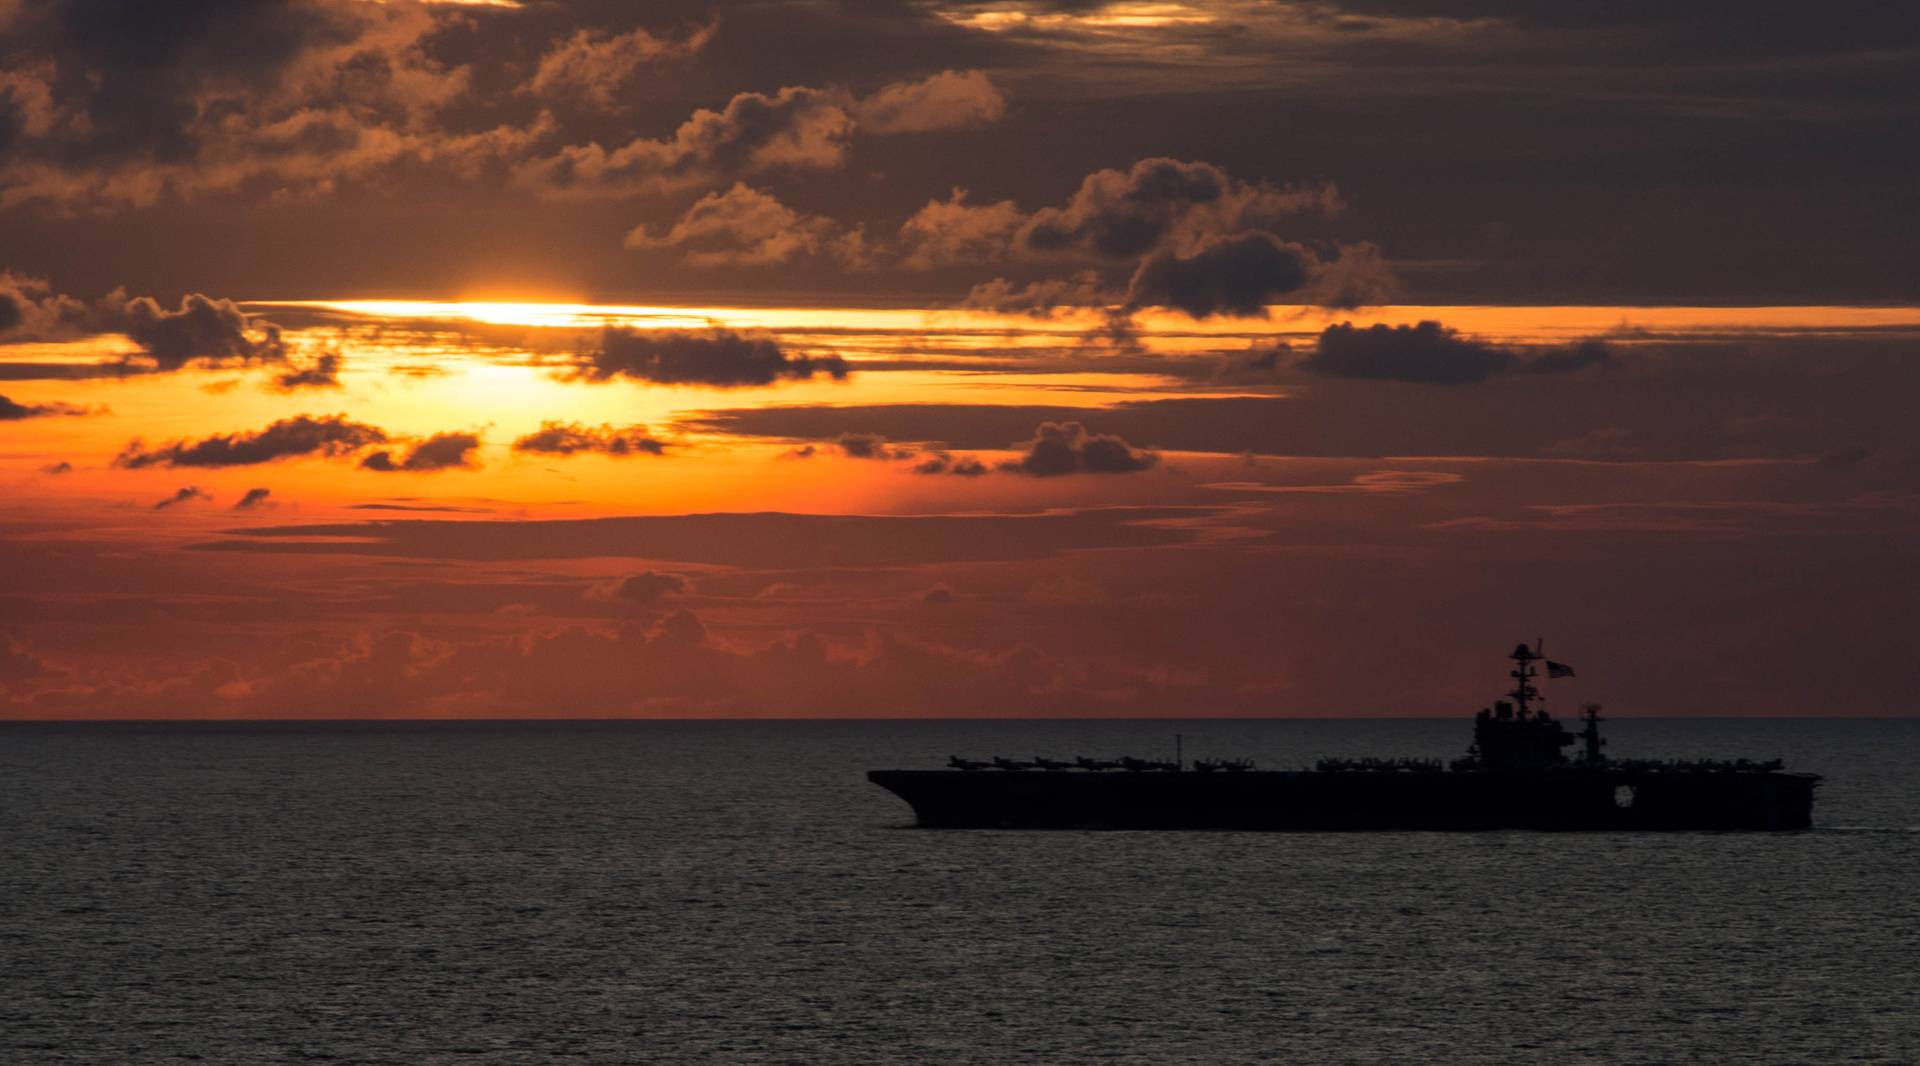 Авианосец ВМС США George Washington идет из Японии в сторону Китая на фоне заката